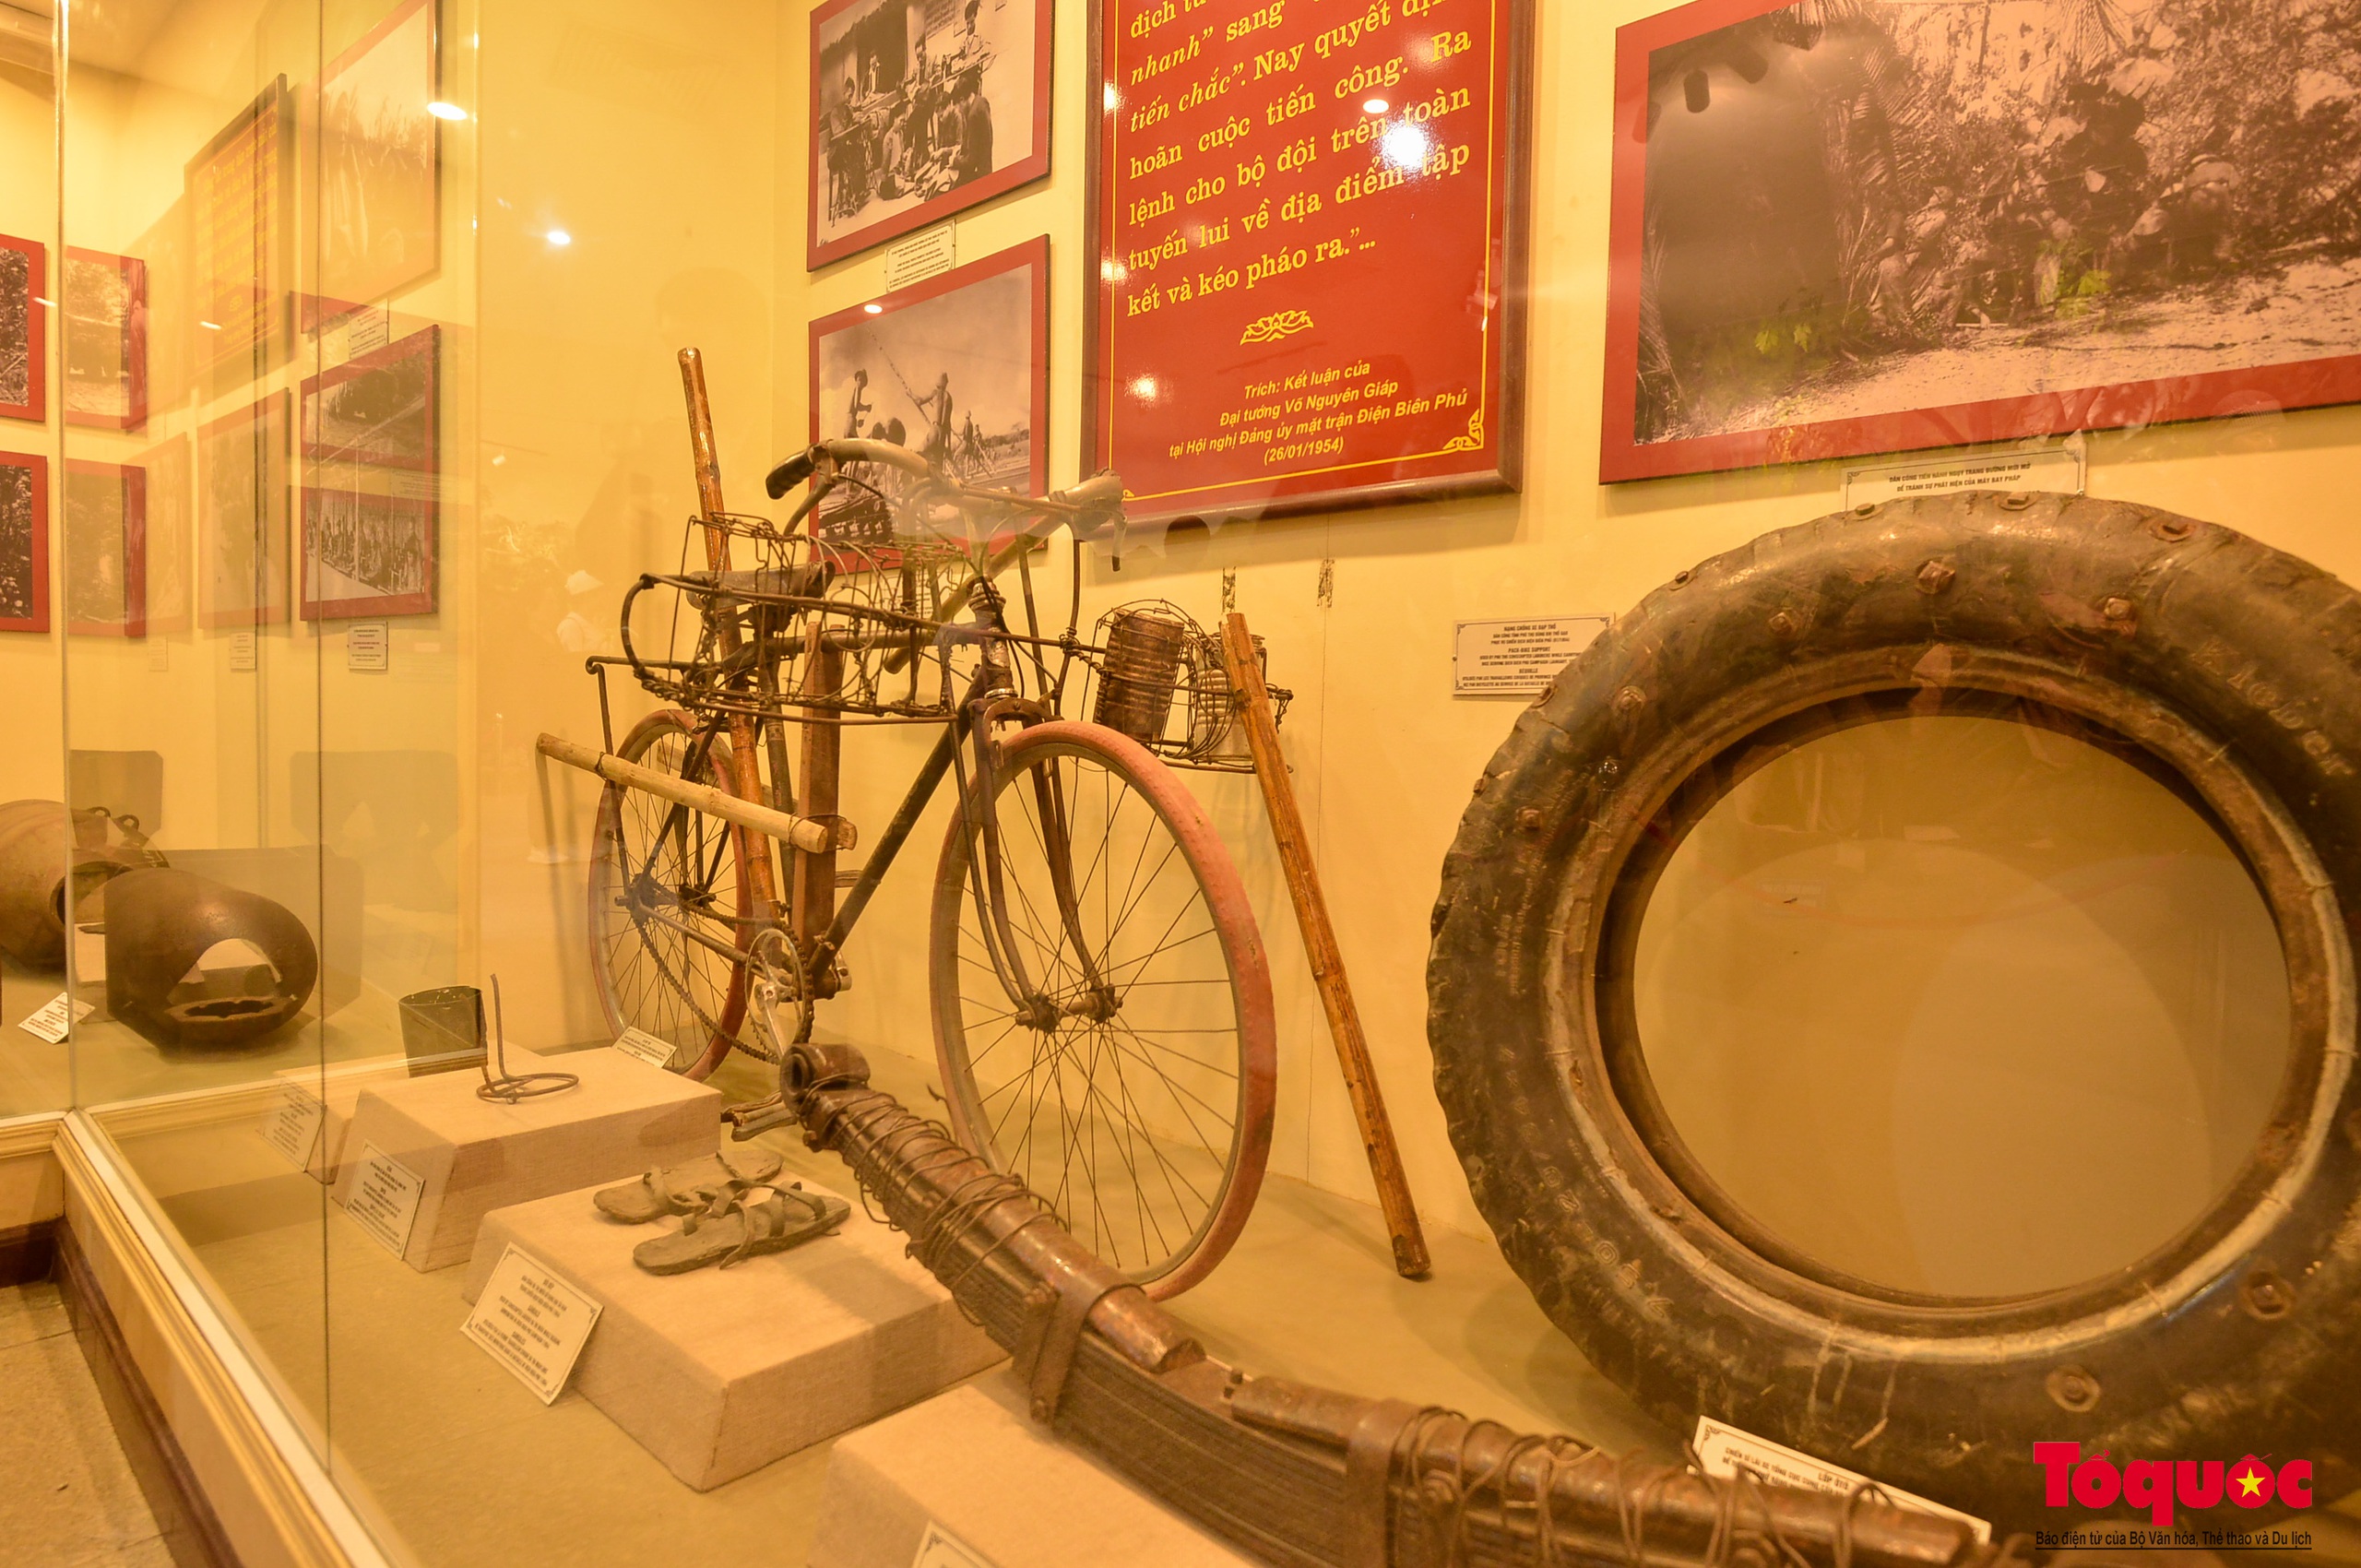 Bảo tàng Chiến thắng lịch sử Điện Biên Phủ - điểm đến ý nghĩa trong những ngày tháng 5 - Ảnh 12.